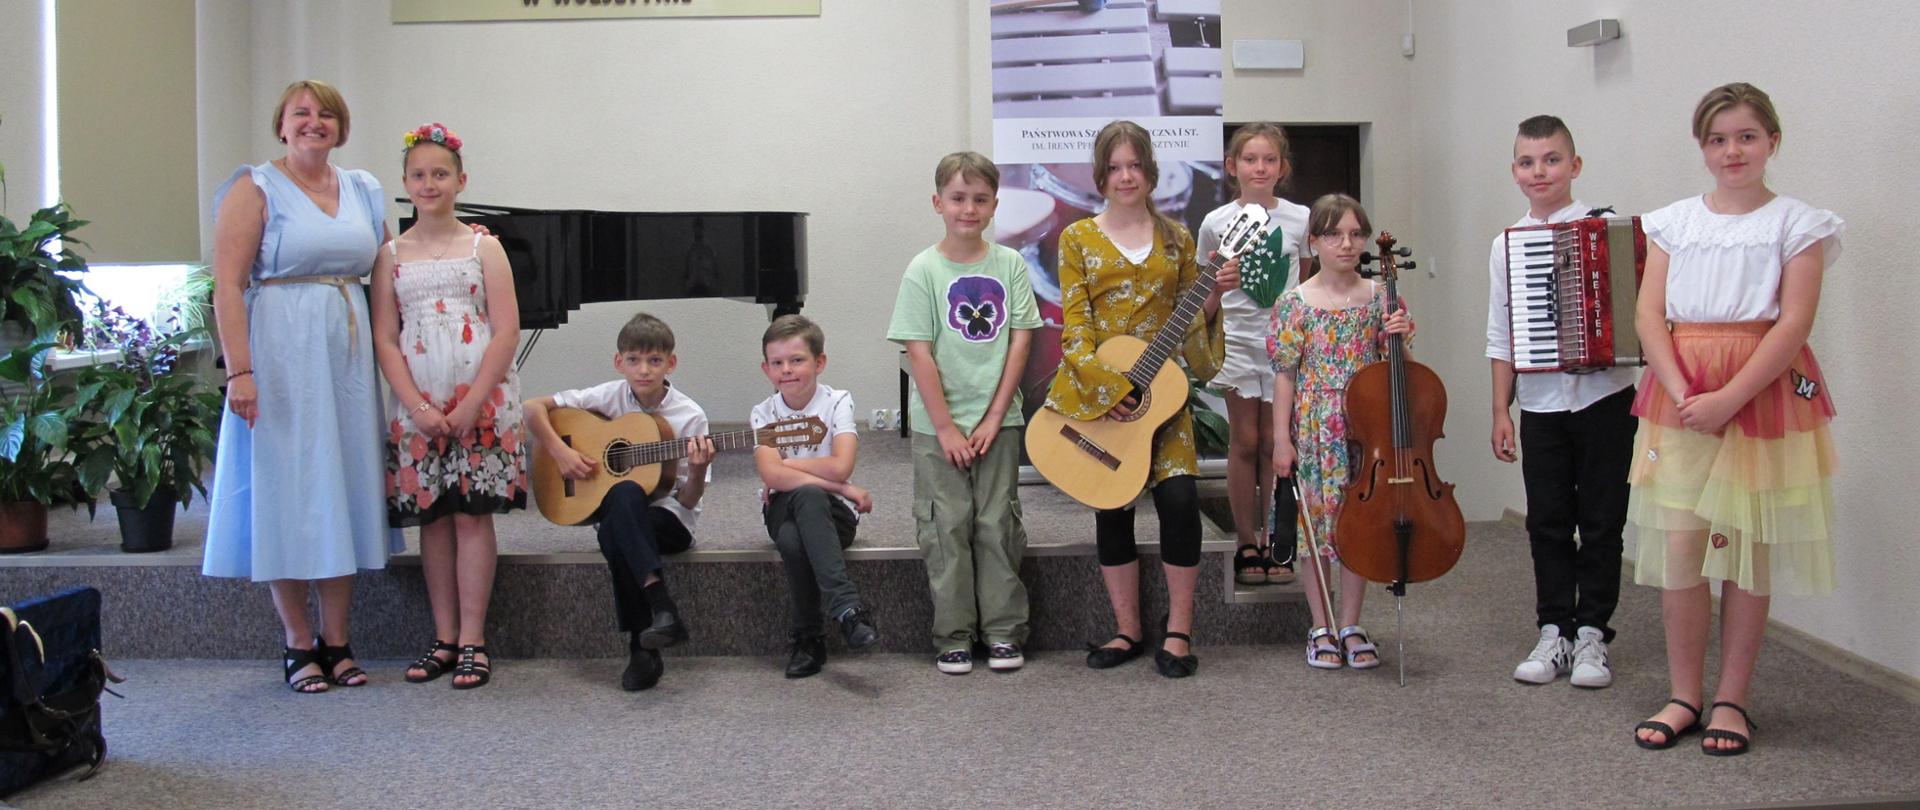 Uczniowie PSM w Wolsztynie, którzy wystąpili na Koncercie Letnim stoją na scenie wraz z panią dyrektor Agnieszką Pilarek-Szumską. Dzieci trzymają instrumenty, na których grały - gitarę, akordeon i wiolonczelę.